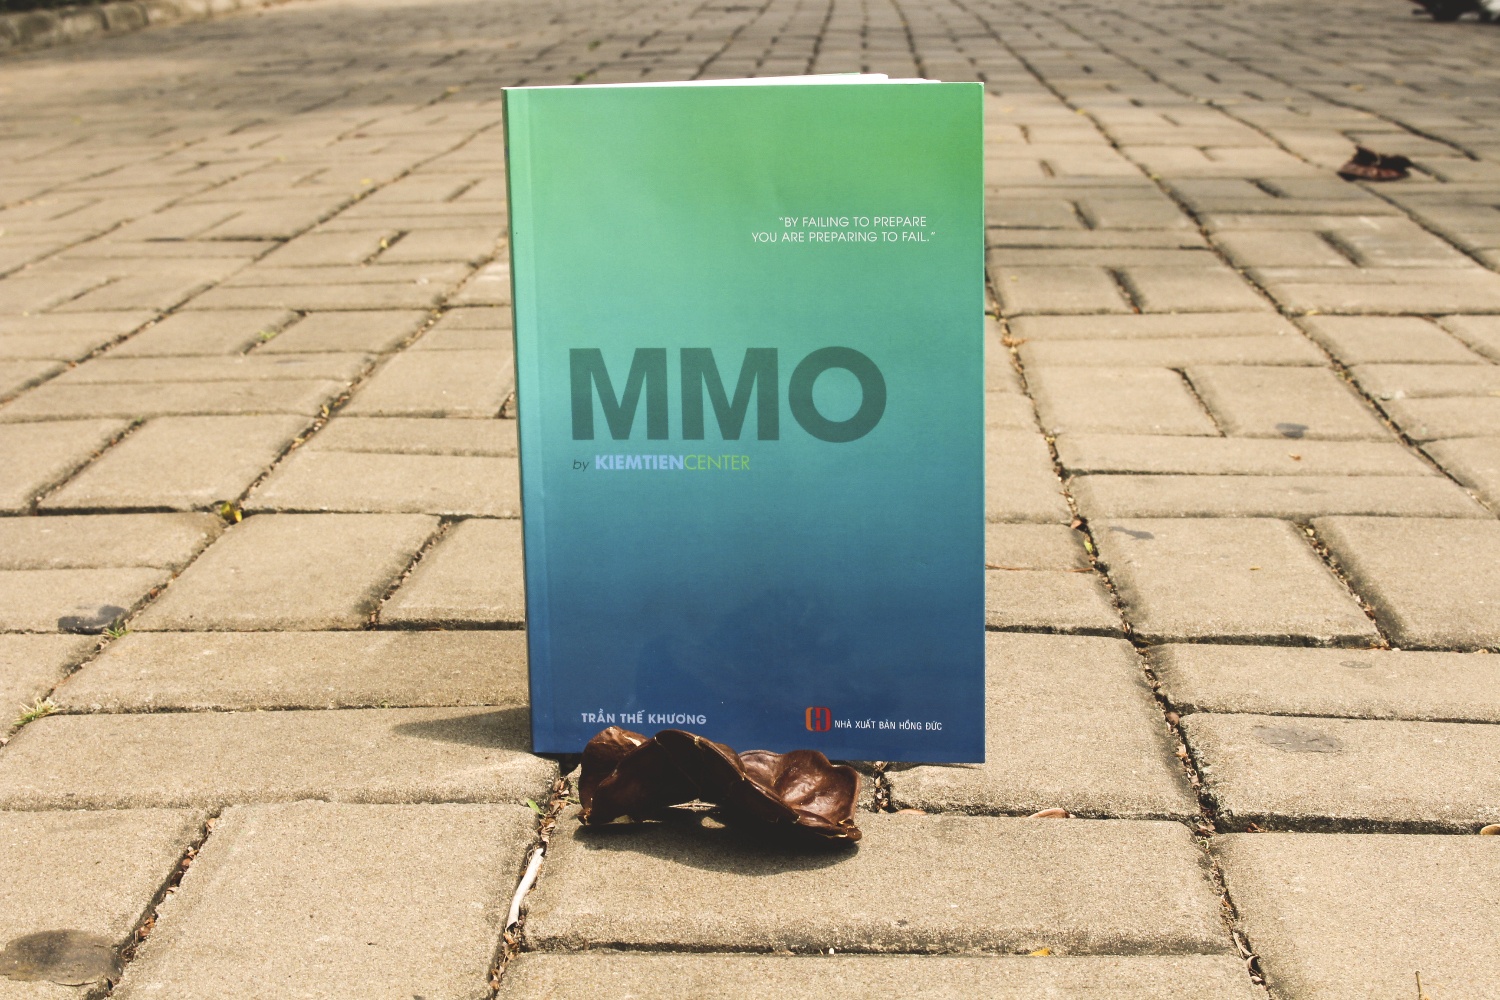 Sách MMO by Kiemtiencenter - Hoàn thiện tư duy & kỹ năng về Digital Marketing cho người mới